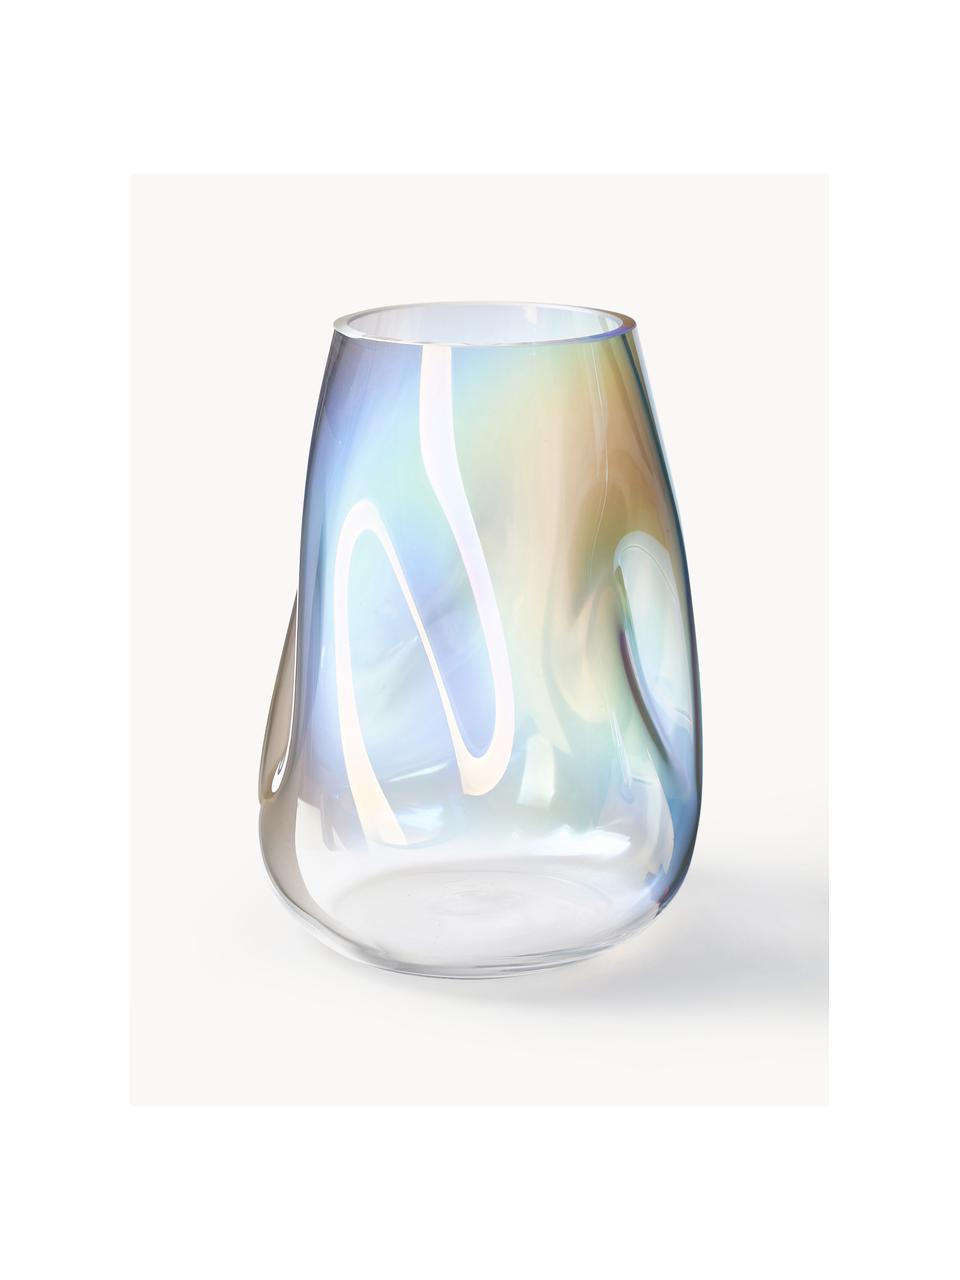 Vaso in vetro soffiato iridescente Rainbow, alt. 26 cm, Vetro soffiato, Trasparente, iridescente, Ø 18 x Alt. 26 cm